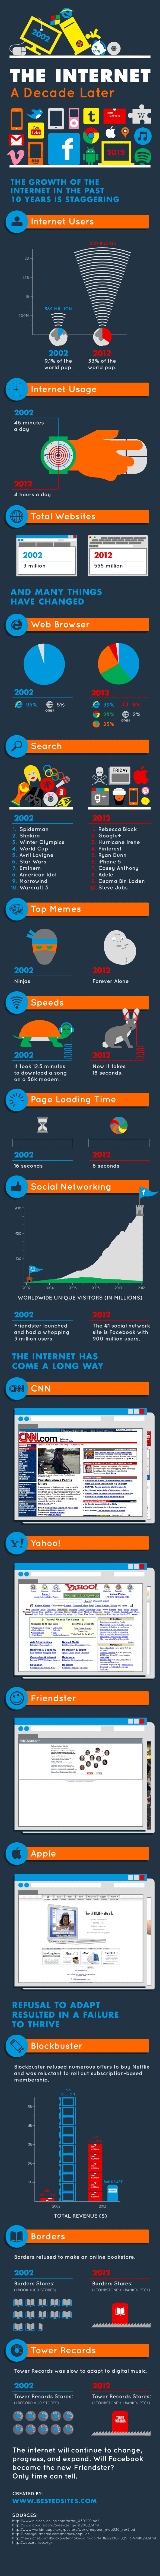 évolution d'internet de 2002 à 2012 - differences